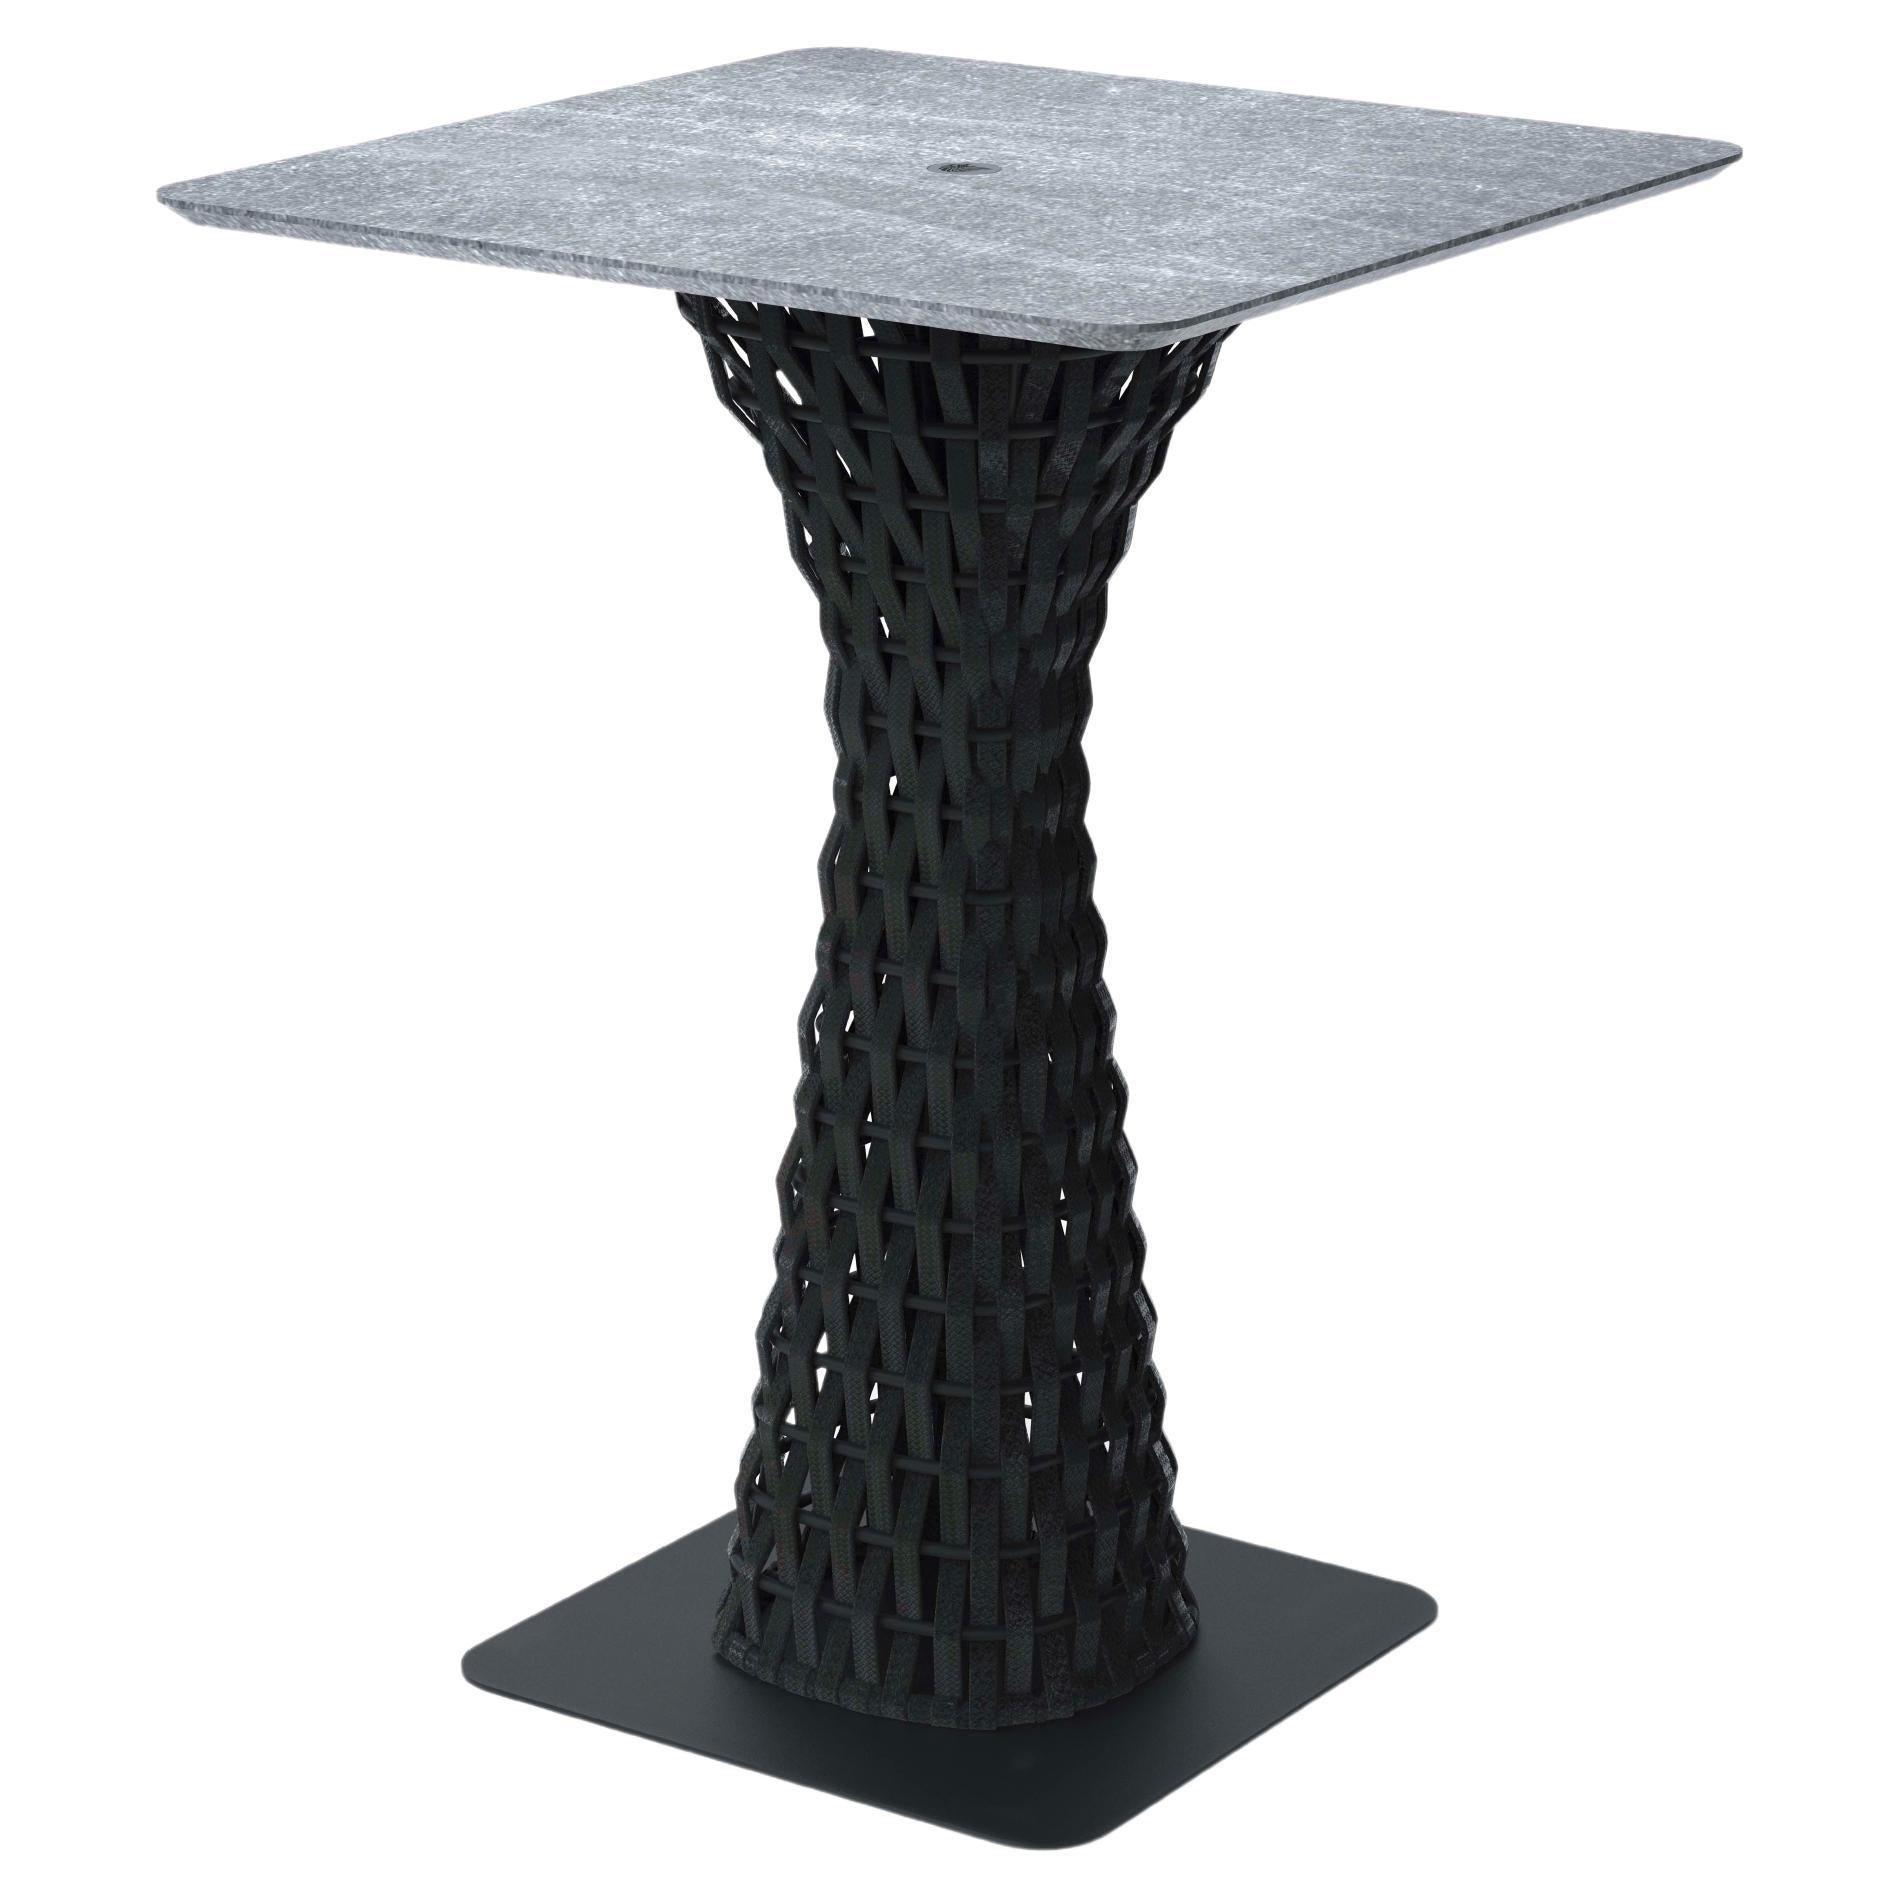 Giorgio Collection Outdoor Garden Bar Table with Stone Top